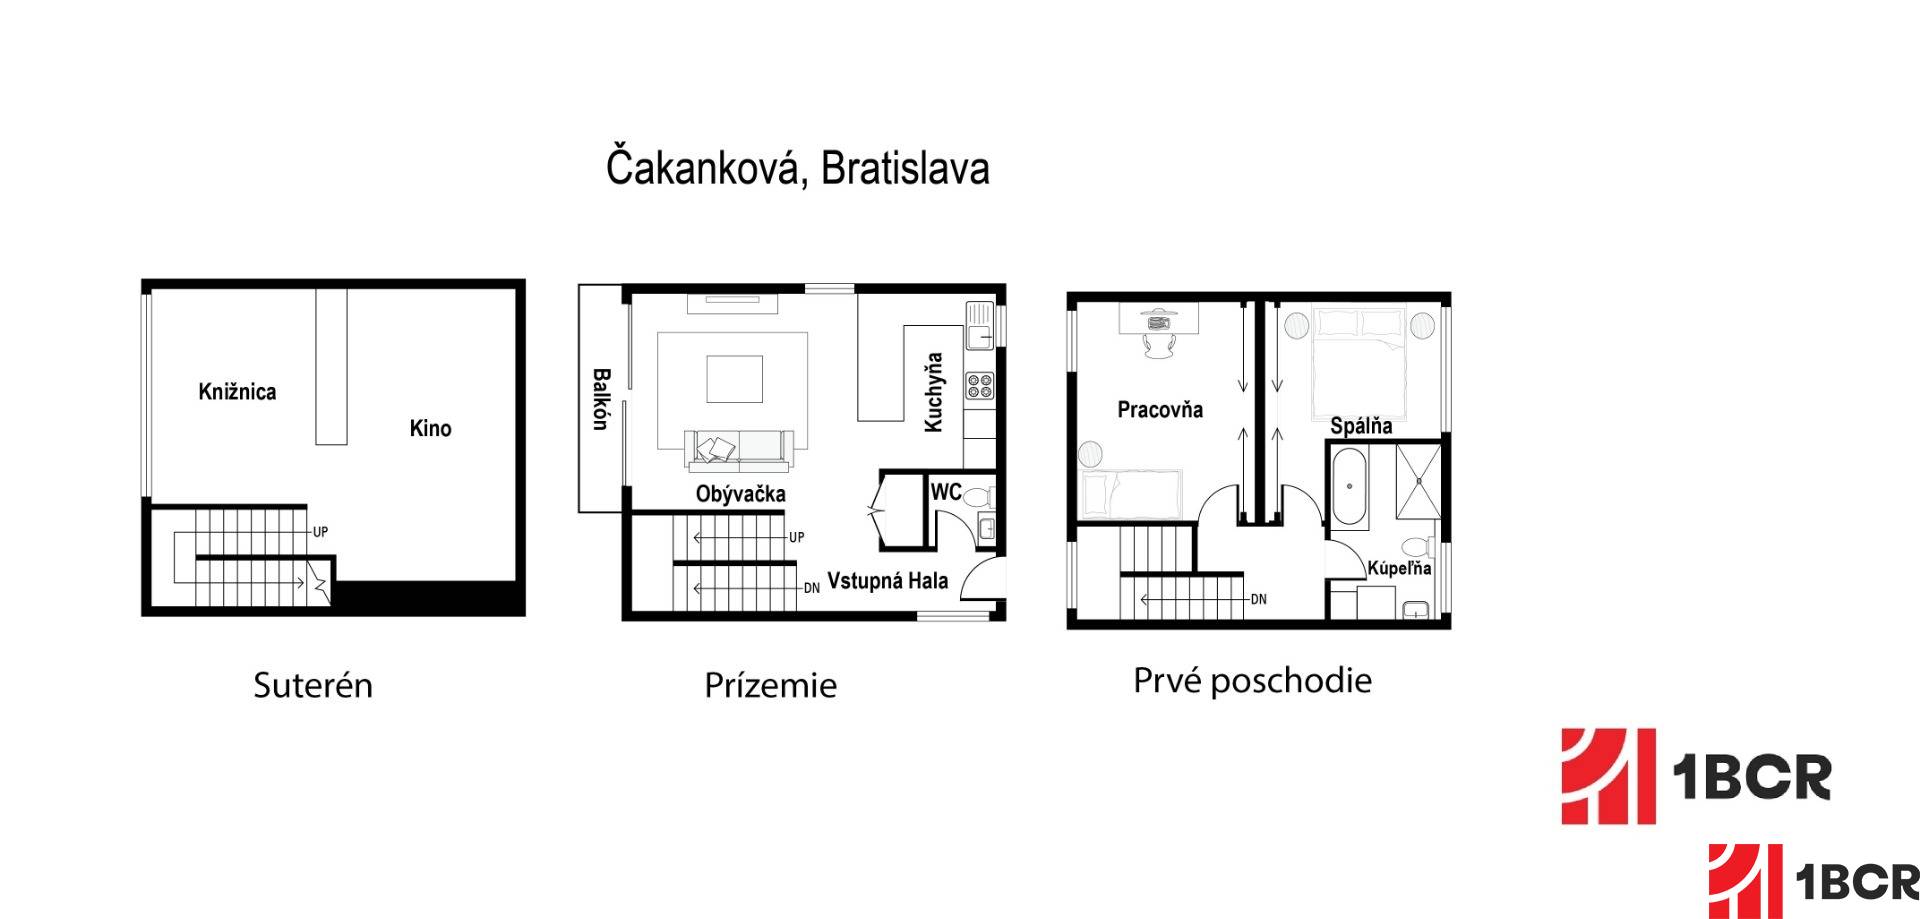 Pôdorys_Čakanková, Bratislava.jpg